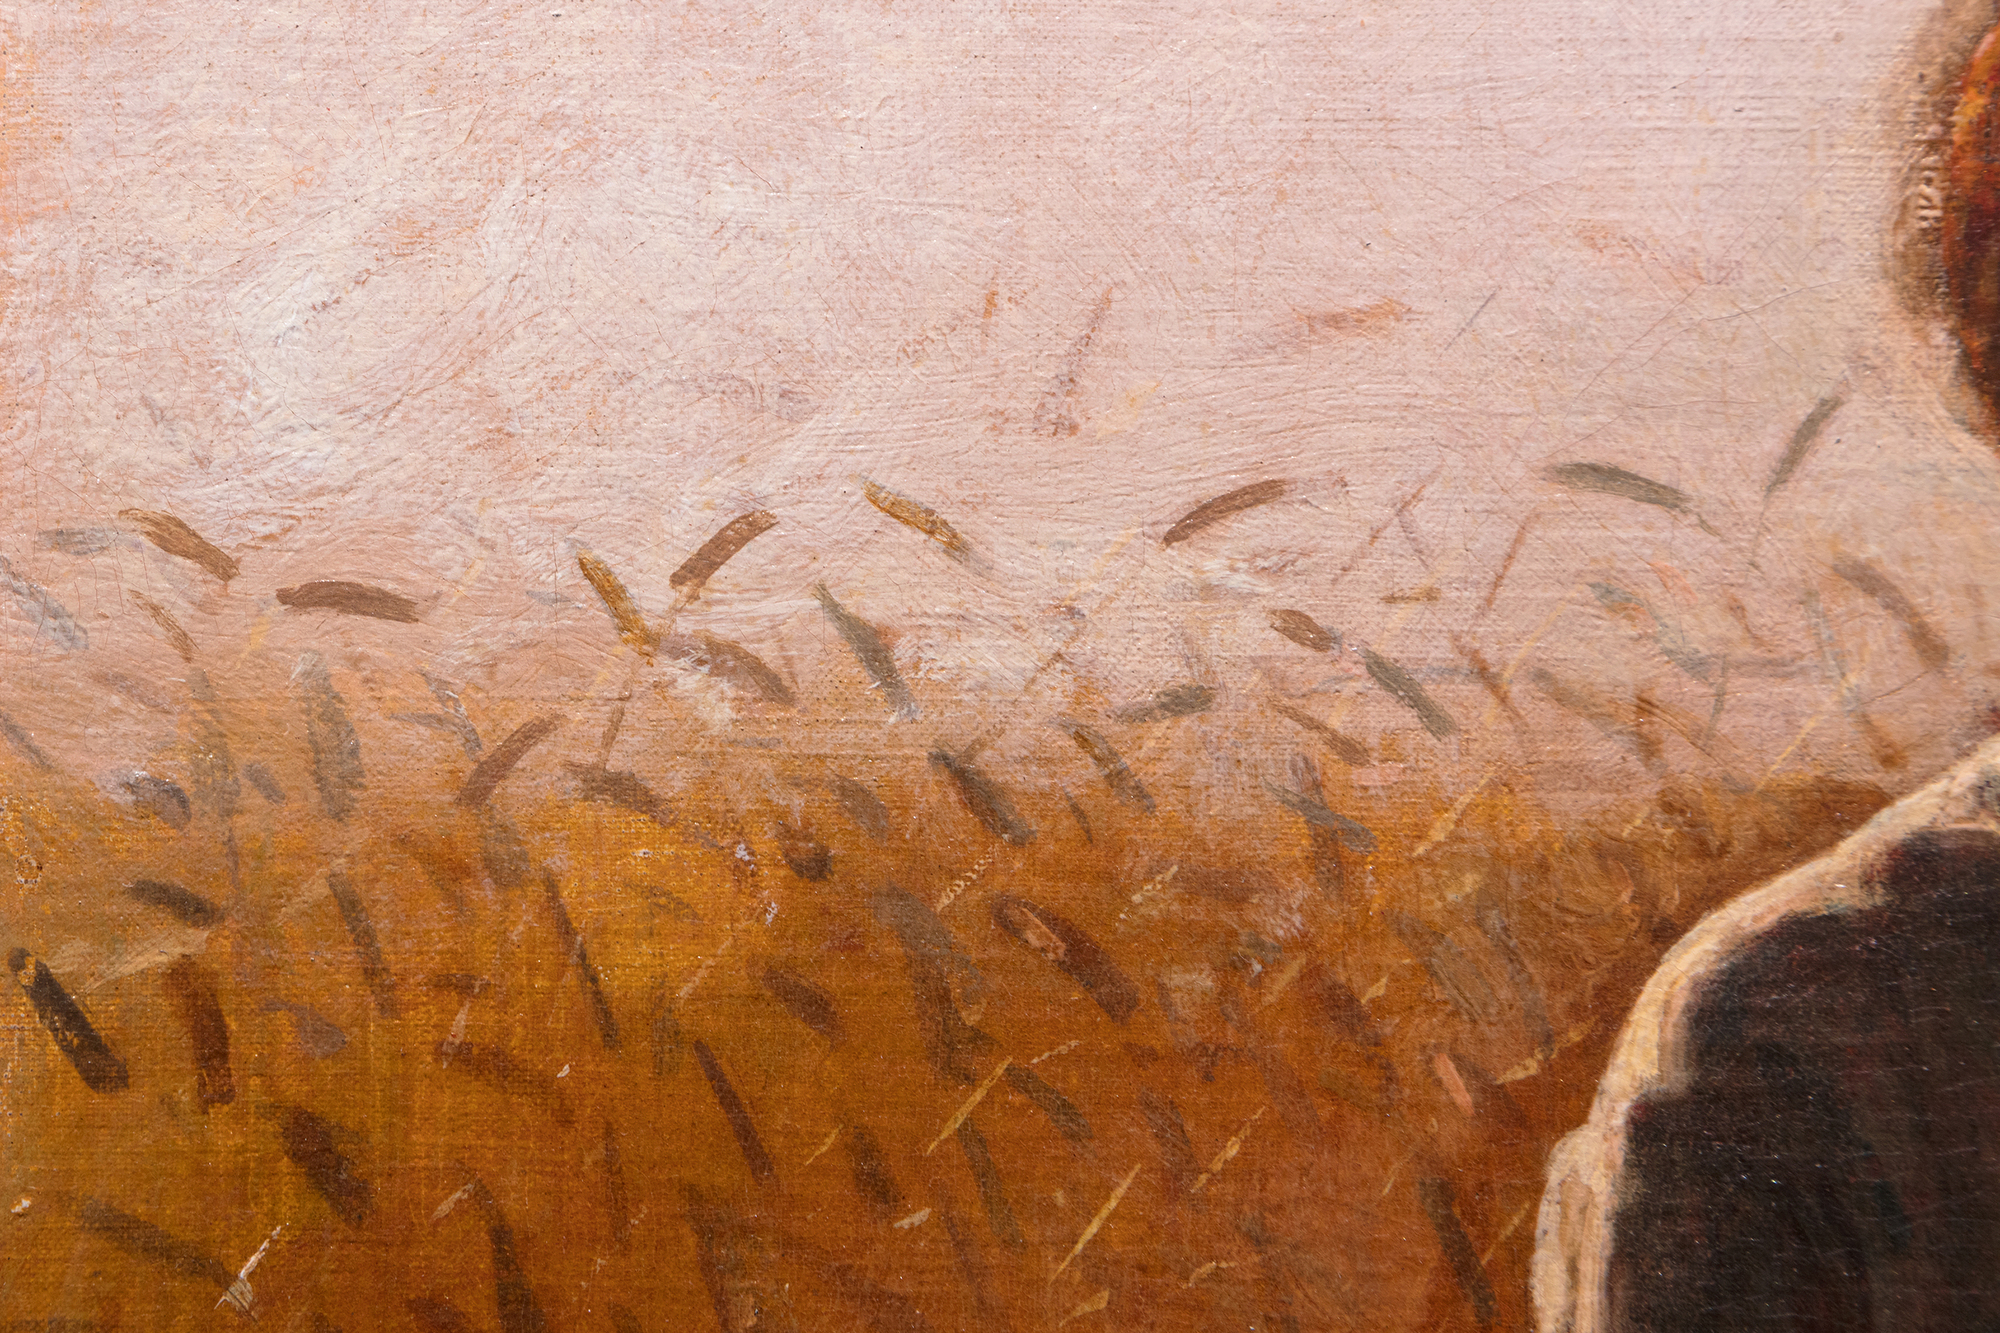 خلال أوائل سبعينيات القرن التاسع عشر ، رسم وينسلو هومر في كثير من الأحيان مشاهد من البلاد التي تعيش بالقرب من قرية صغيرة تشتهر لأجيال لمواقفها الرائعة من القمح ، وتقع بين نهر هدسون وكاتسكيلز في ولاية نيويورك. يشتهر هيرلي اليوم بإلهام أحد أعظم أعمال هوميروس ، Snap the Whip الذي رسمه صيف عام 1872. من بين العديد من اللوحات الأخرى المستوحاة من المنطقة ، فإن Girl Standing in the Wheatfield غنية بالمشاعر ، ولكنها ليست عاطفية للغاية. يتعلق الأمر مباشرة بدراسة رسمت عام 1866 في فرنسا بعنوان ، في حقول القمح ، وأخرى رسمت في العام التالي بعد عودته إلى أمريكا. لكن هوميروس كان بلا شك أكثر فخرا بهذا. إنها صورة ، ودراسة أزياء ، ولوحة من النوع في التقليد العظيم للرسم الرعوي الأوروبي ، وجولة ذات إضاءة خلفية دراماتيكية ، وجولة في الغلاف الجوي غارقة في ضوء الساعة الكئيب الذي يتلاشى بسرعة والمدعوم بنوتات لامب ومنمقة ولمسات سنبلة القمح. في عام 1874 ، أرسل هوميروس أربع لوحات إلى معرض الأكاديمية الوطنية للتصميم. واحد كان بعنوان "فتاة". قد لا يكون هذا؟